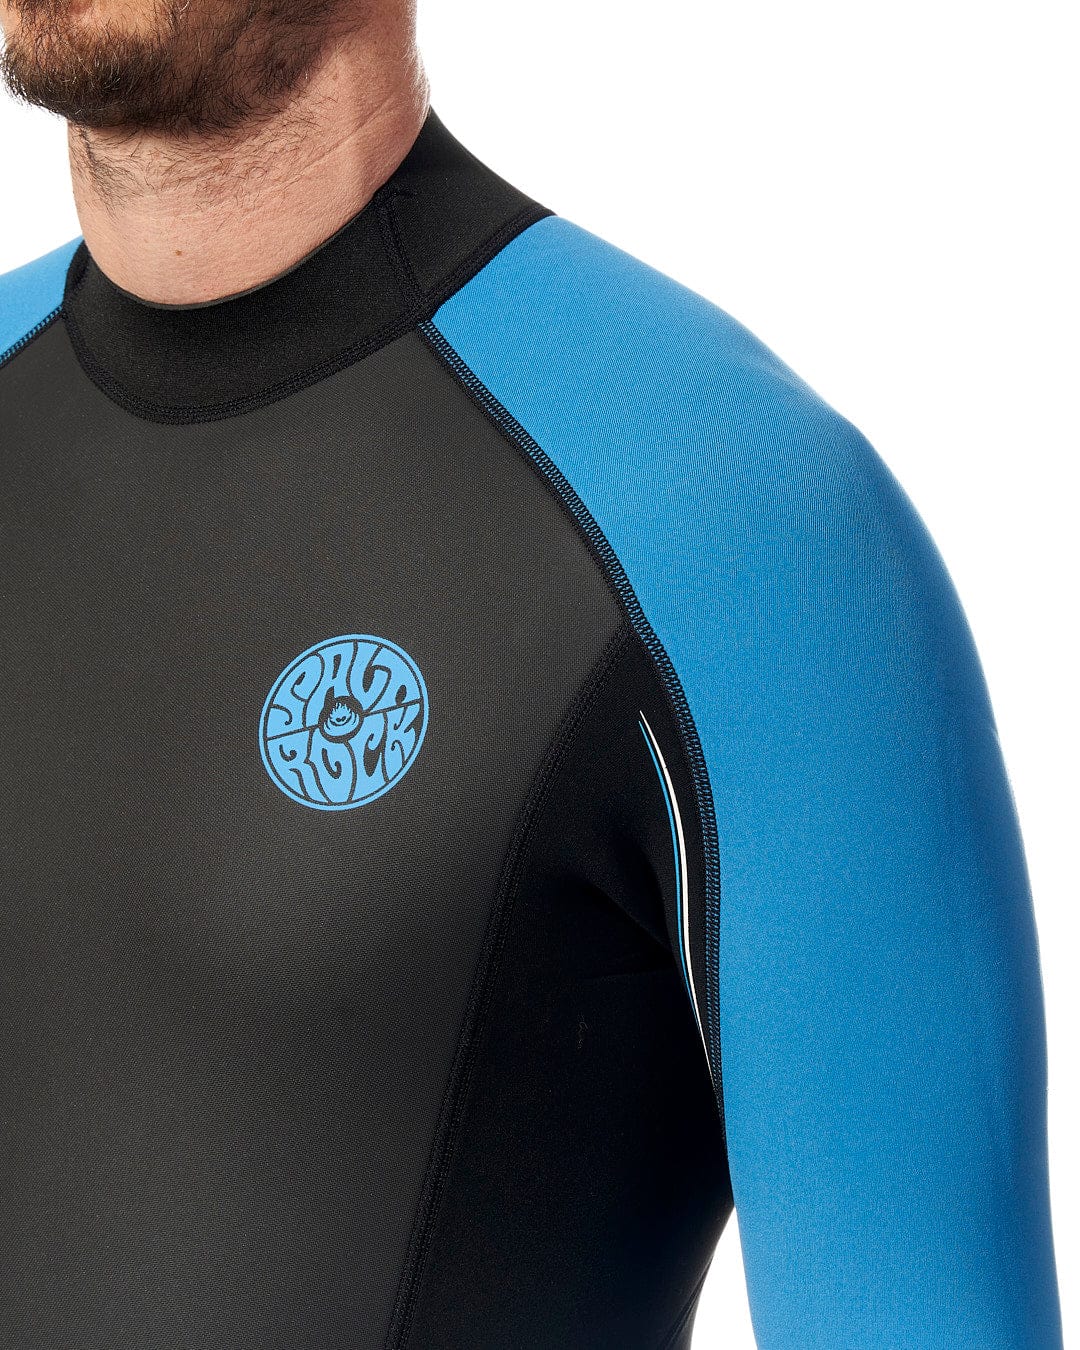 A man wearing a Saltrock Core - Mens 3/2 Full Wetsuit - Blue/Black.